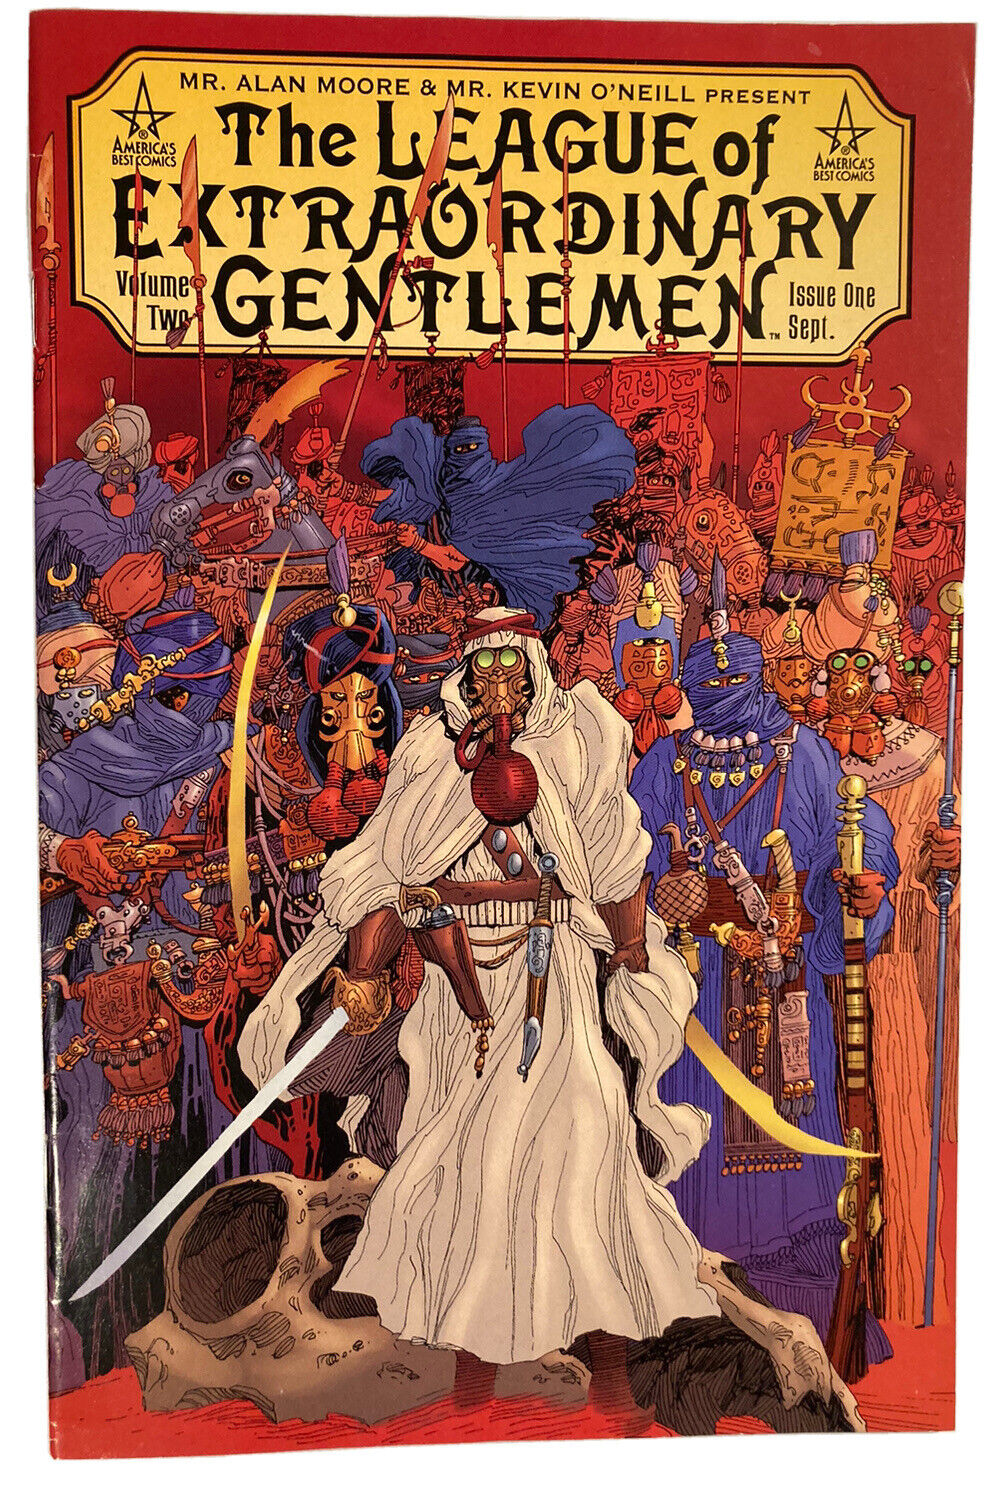 League Of Extraordinary Gentlemen VOL. 2 # 1 by Alan Moore Comic Sept. 2002